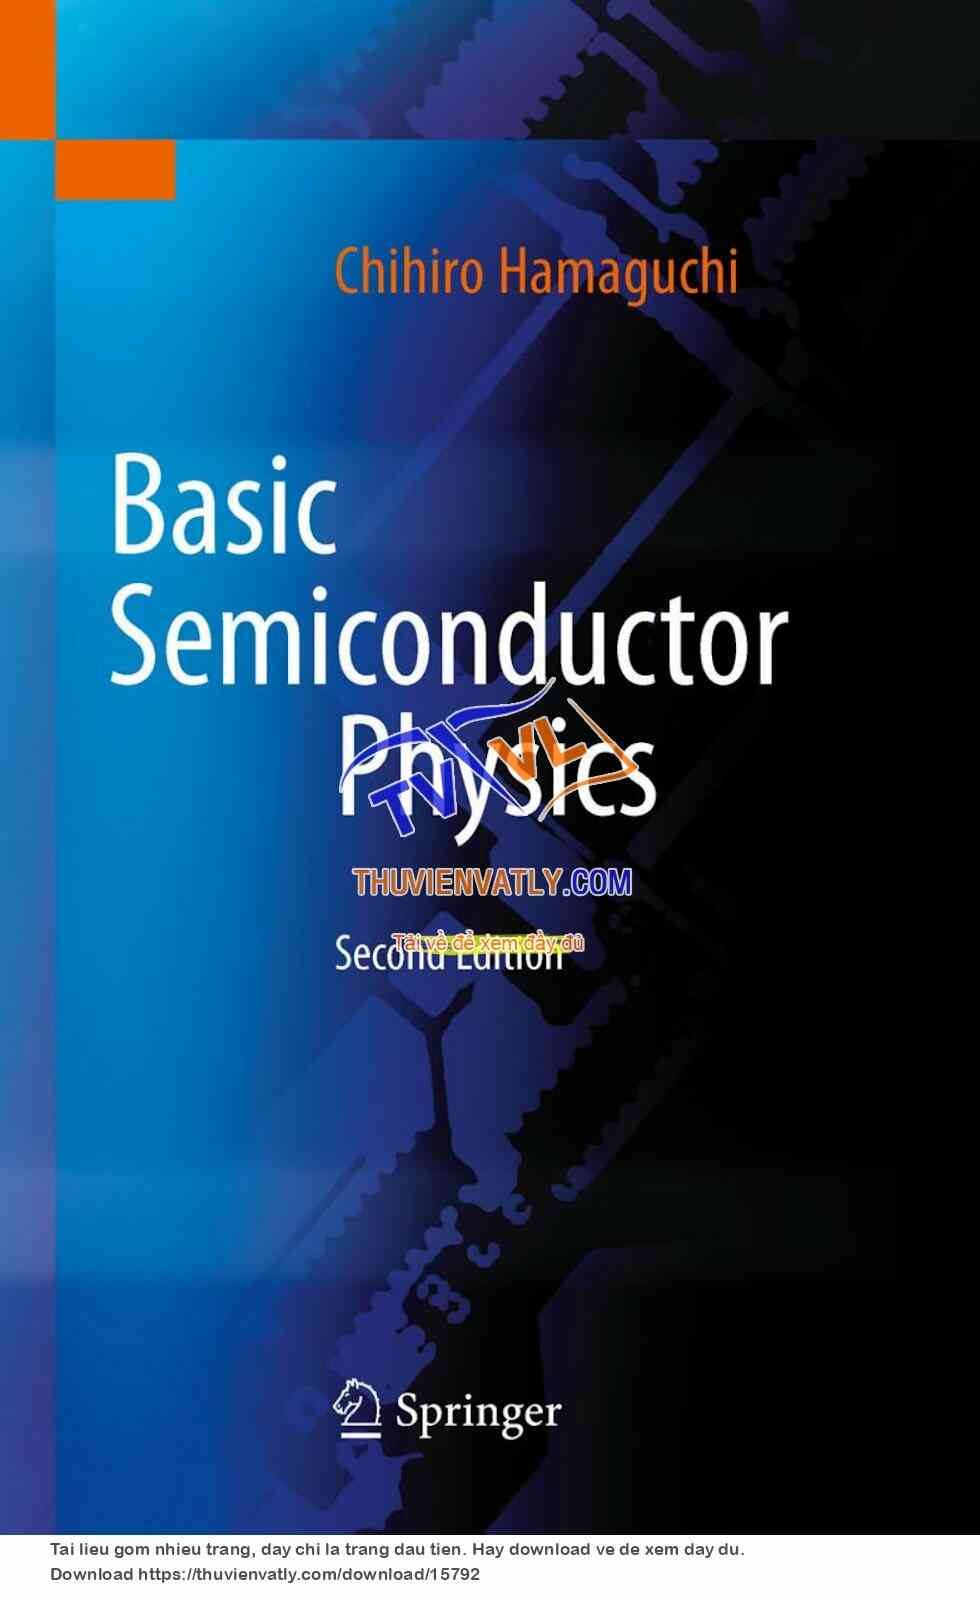 Basic Semiconductor Physics (Chihiro Hamaguchi, Springer 2010)